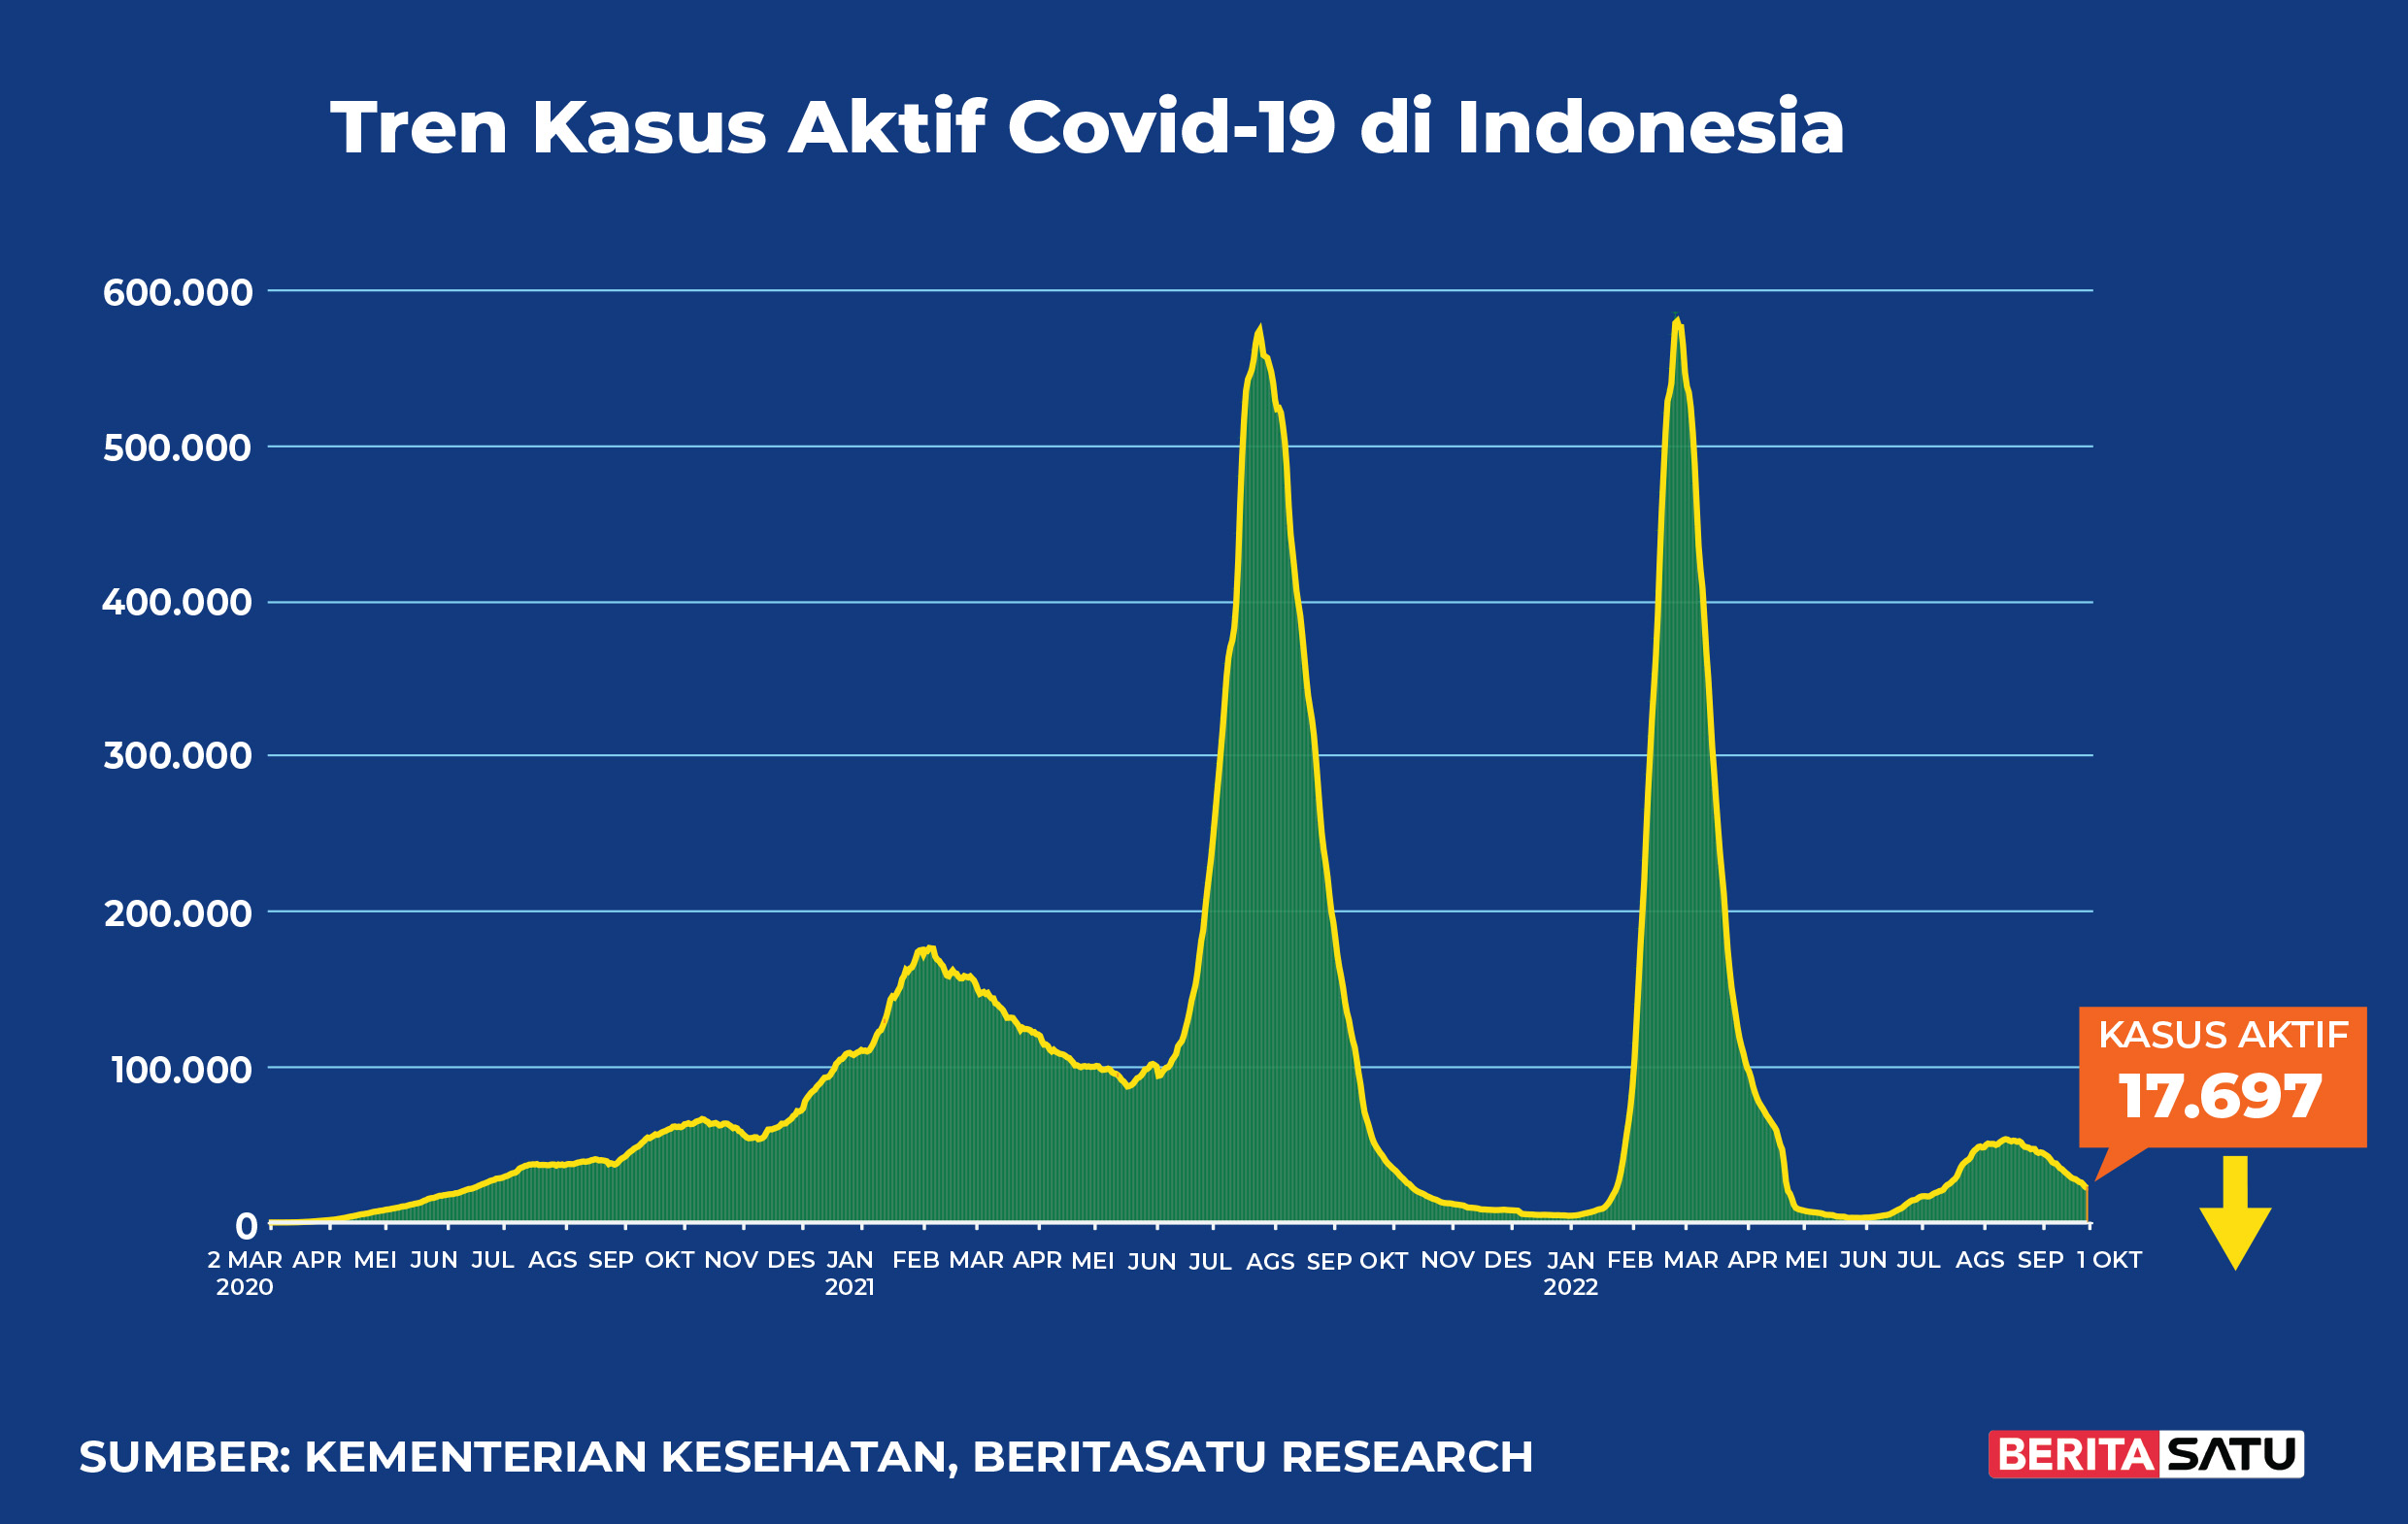 Kasus Aktif Covid-19 di Indonesia sampai 1 Oktober 2022